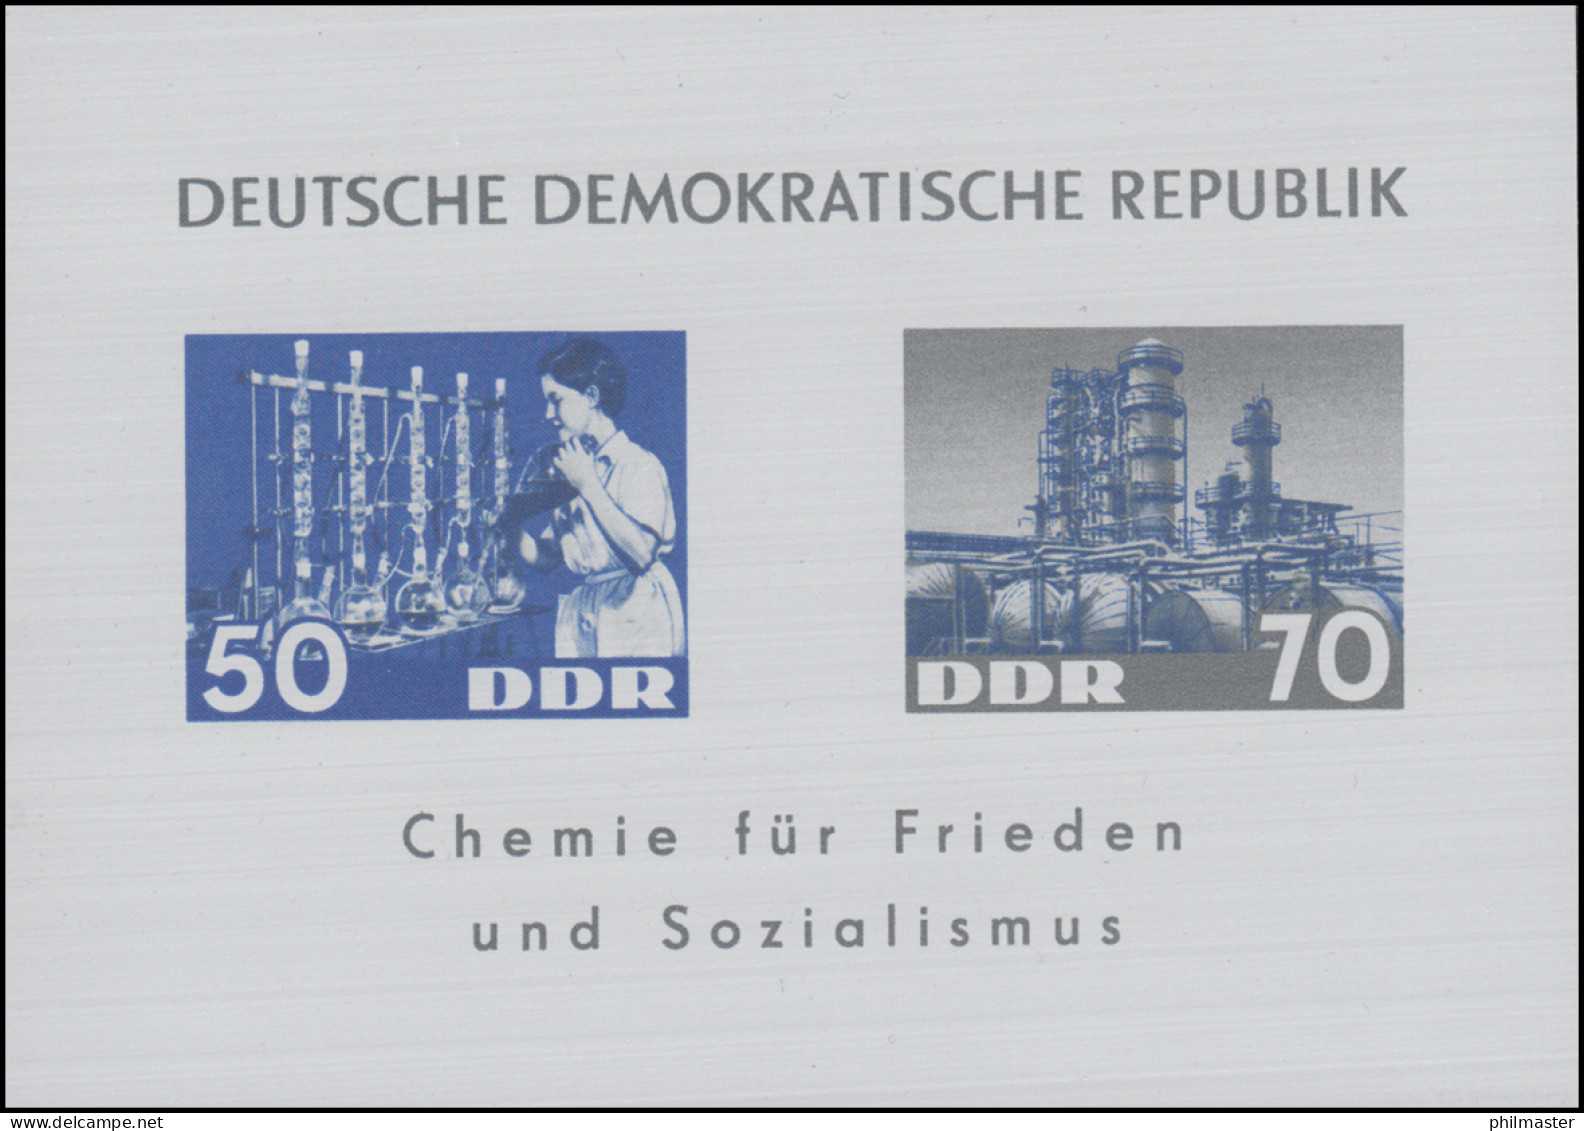 Block 18 Chemische Industrie / Dederonblock 1963 - Geprüft Schönherr BPP - Ongebruikt